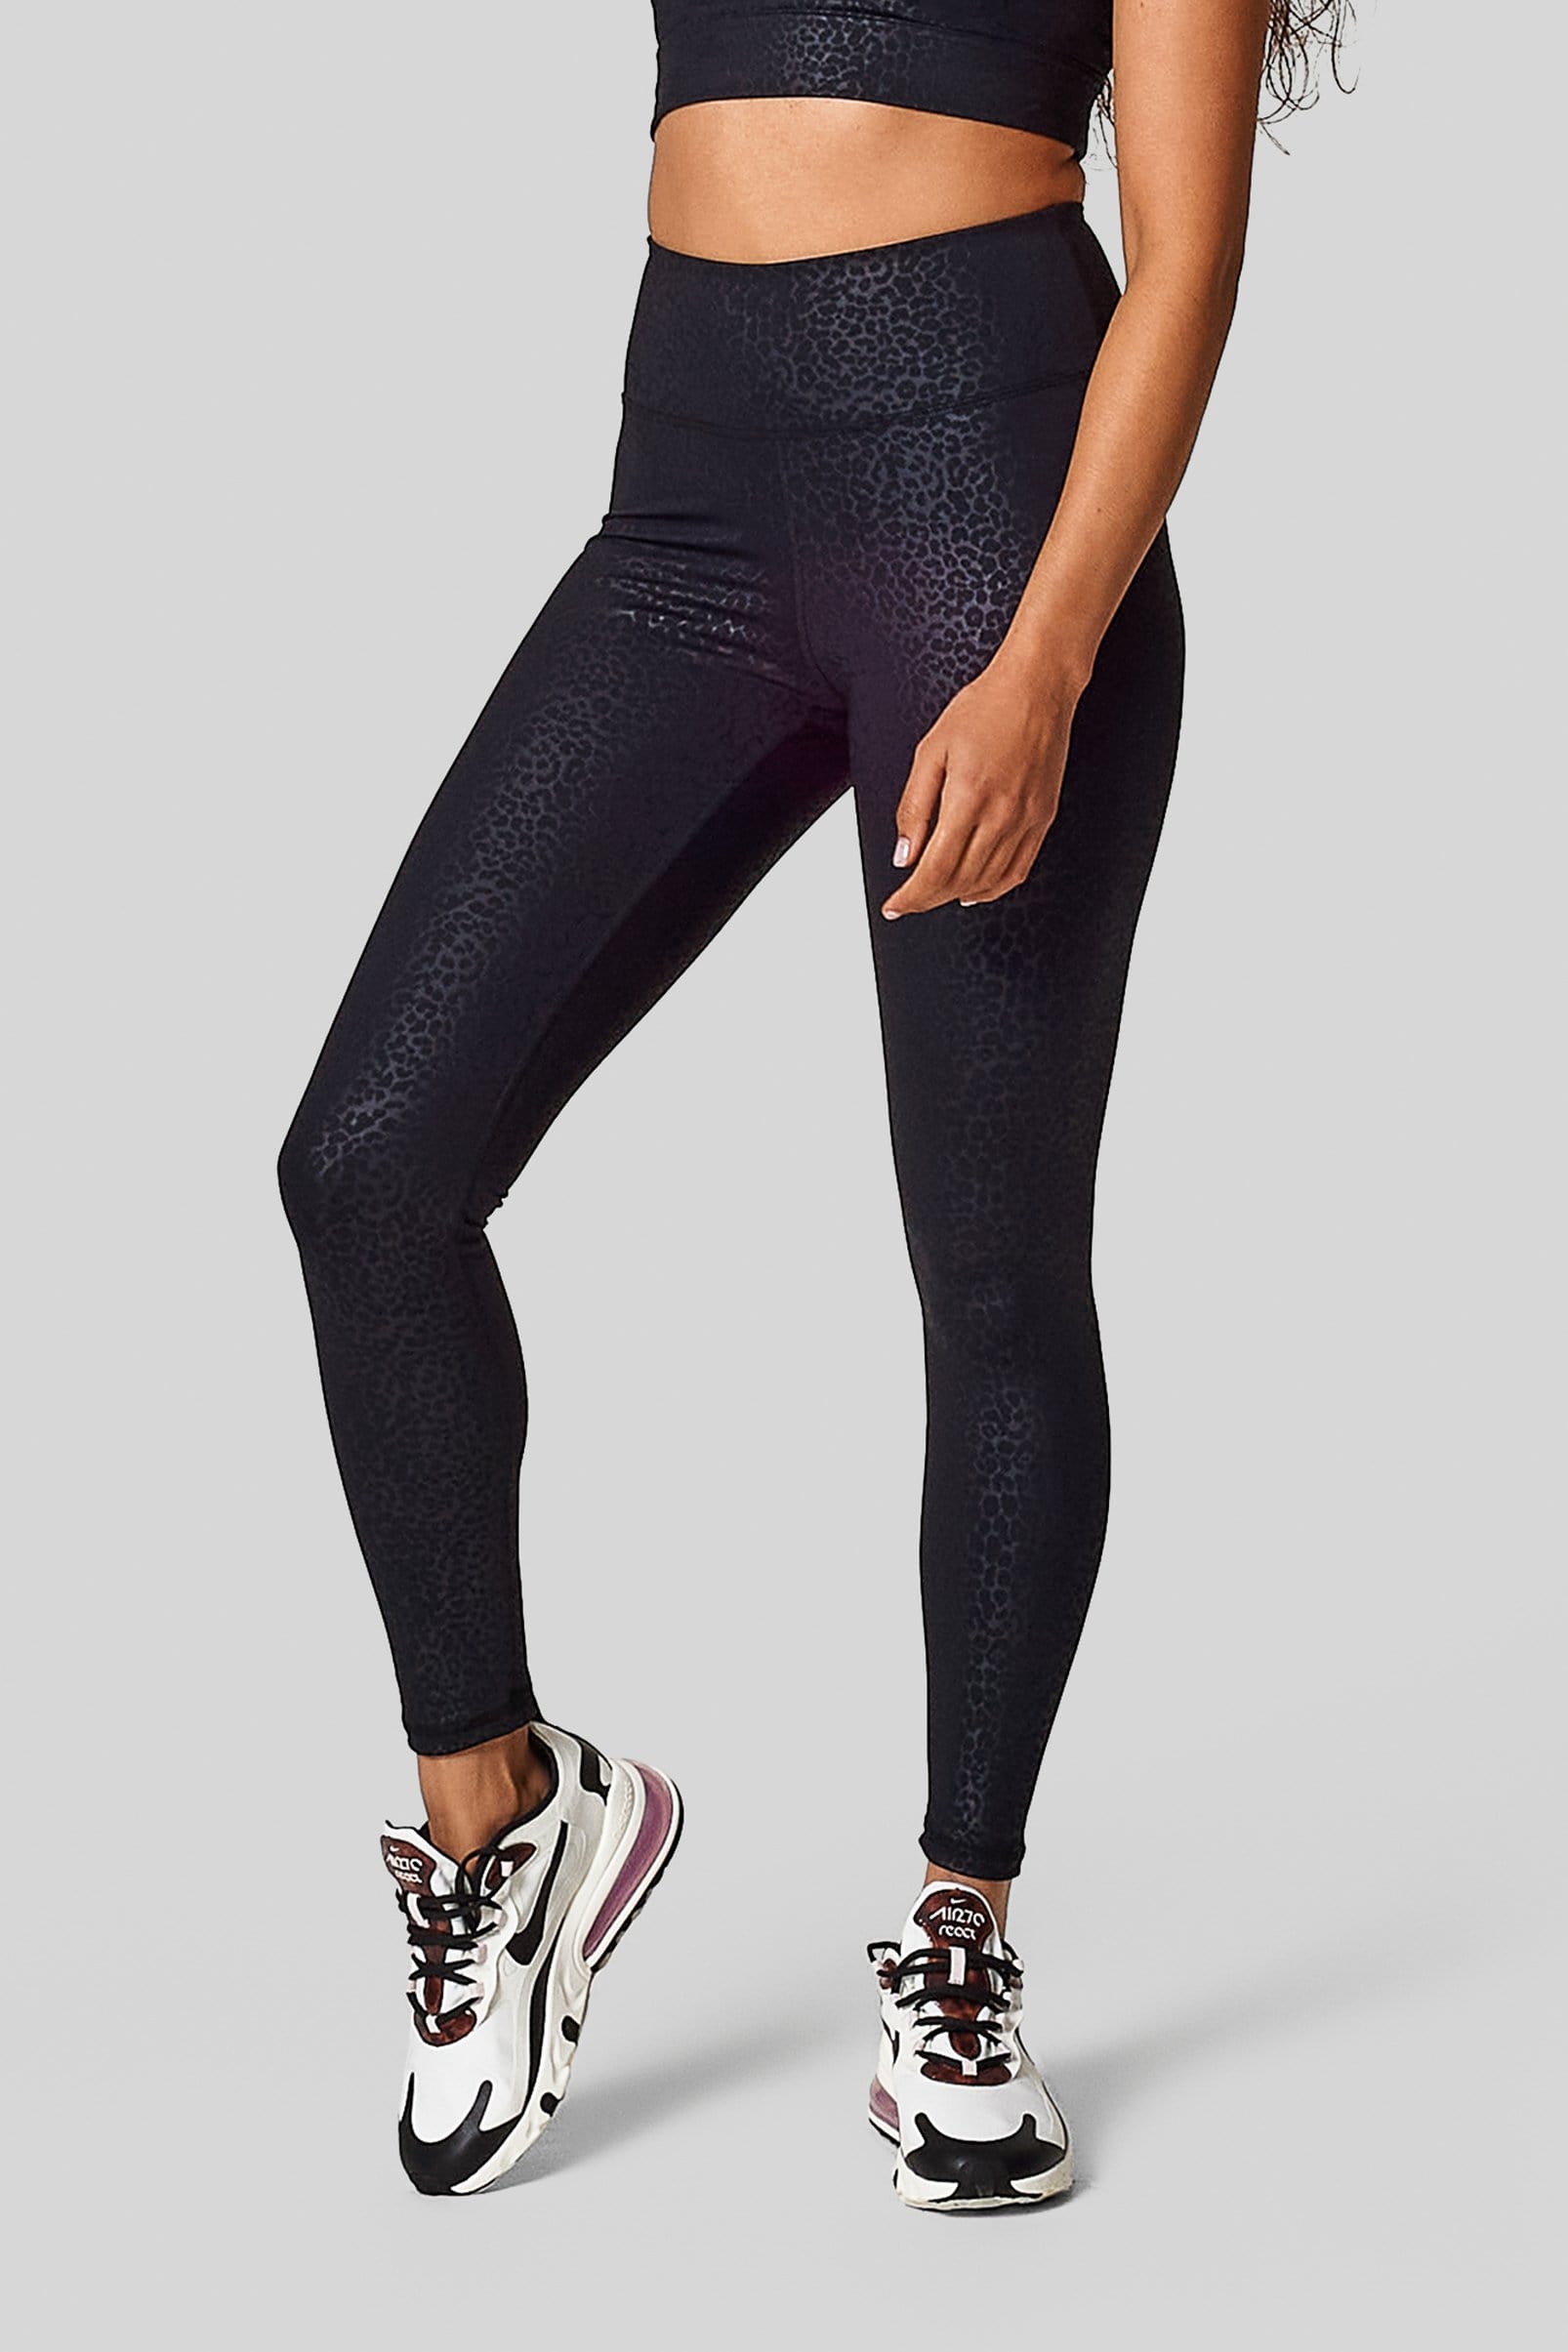 Black Nike Nike One Women's High-Waisted 7/8 Printed Leggings